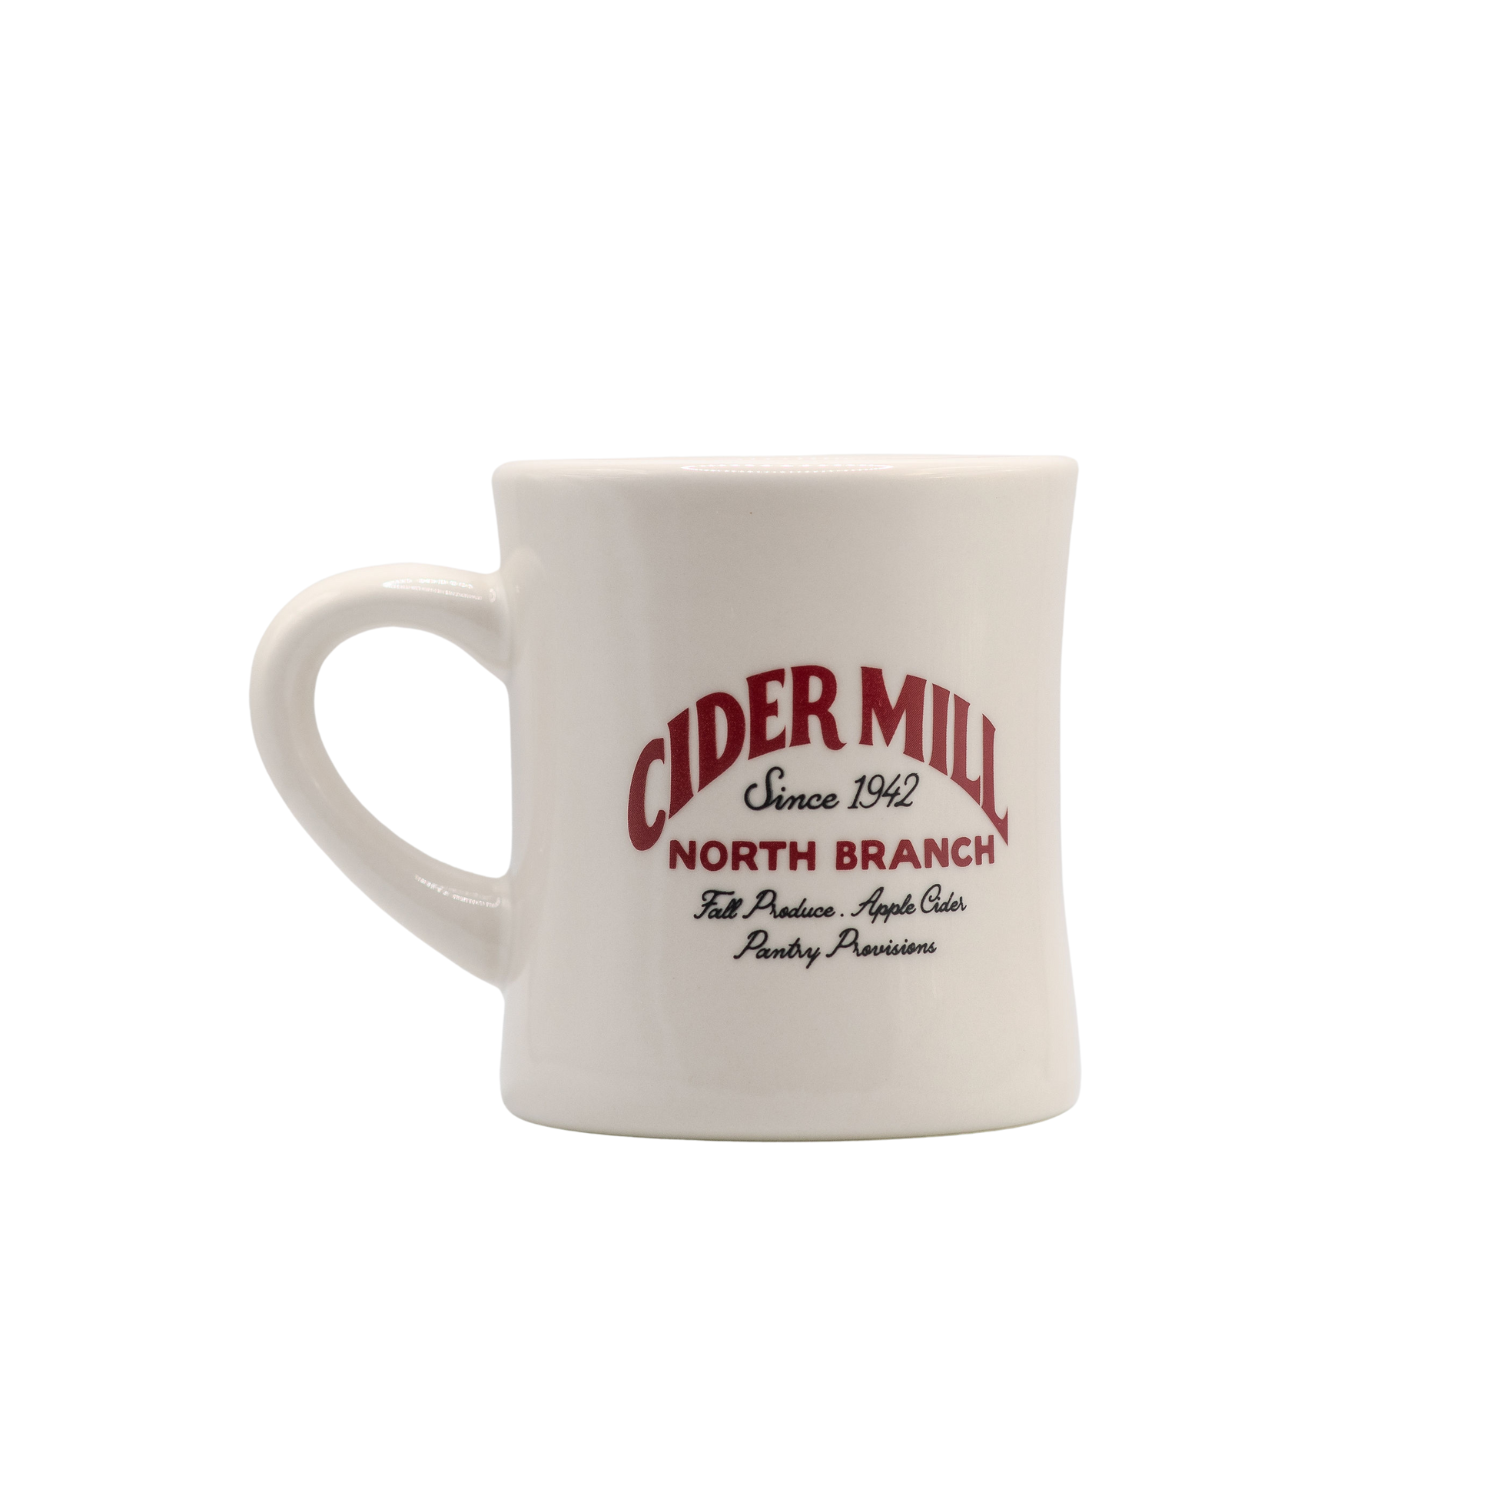 Cider Mill Mug